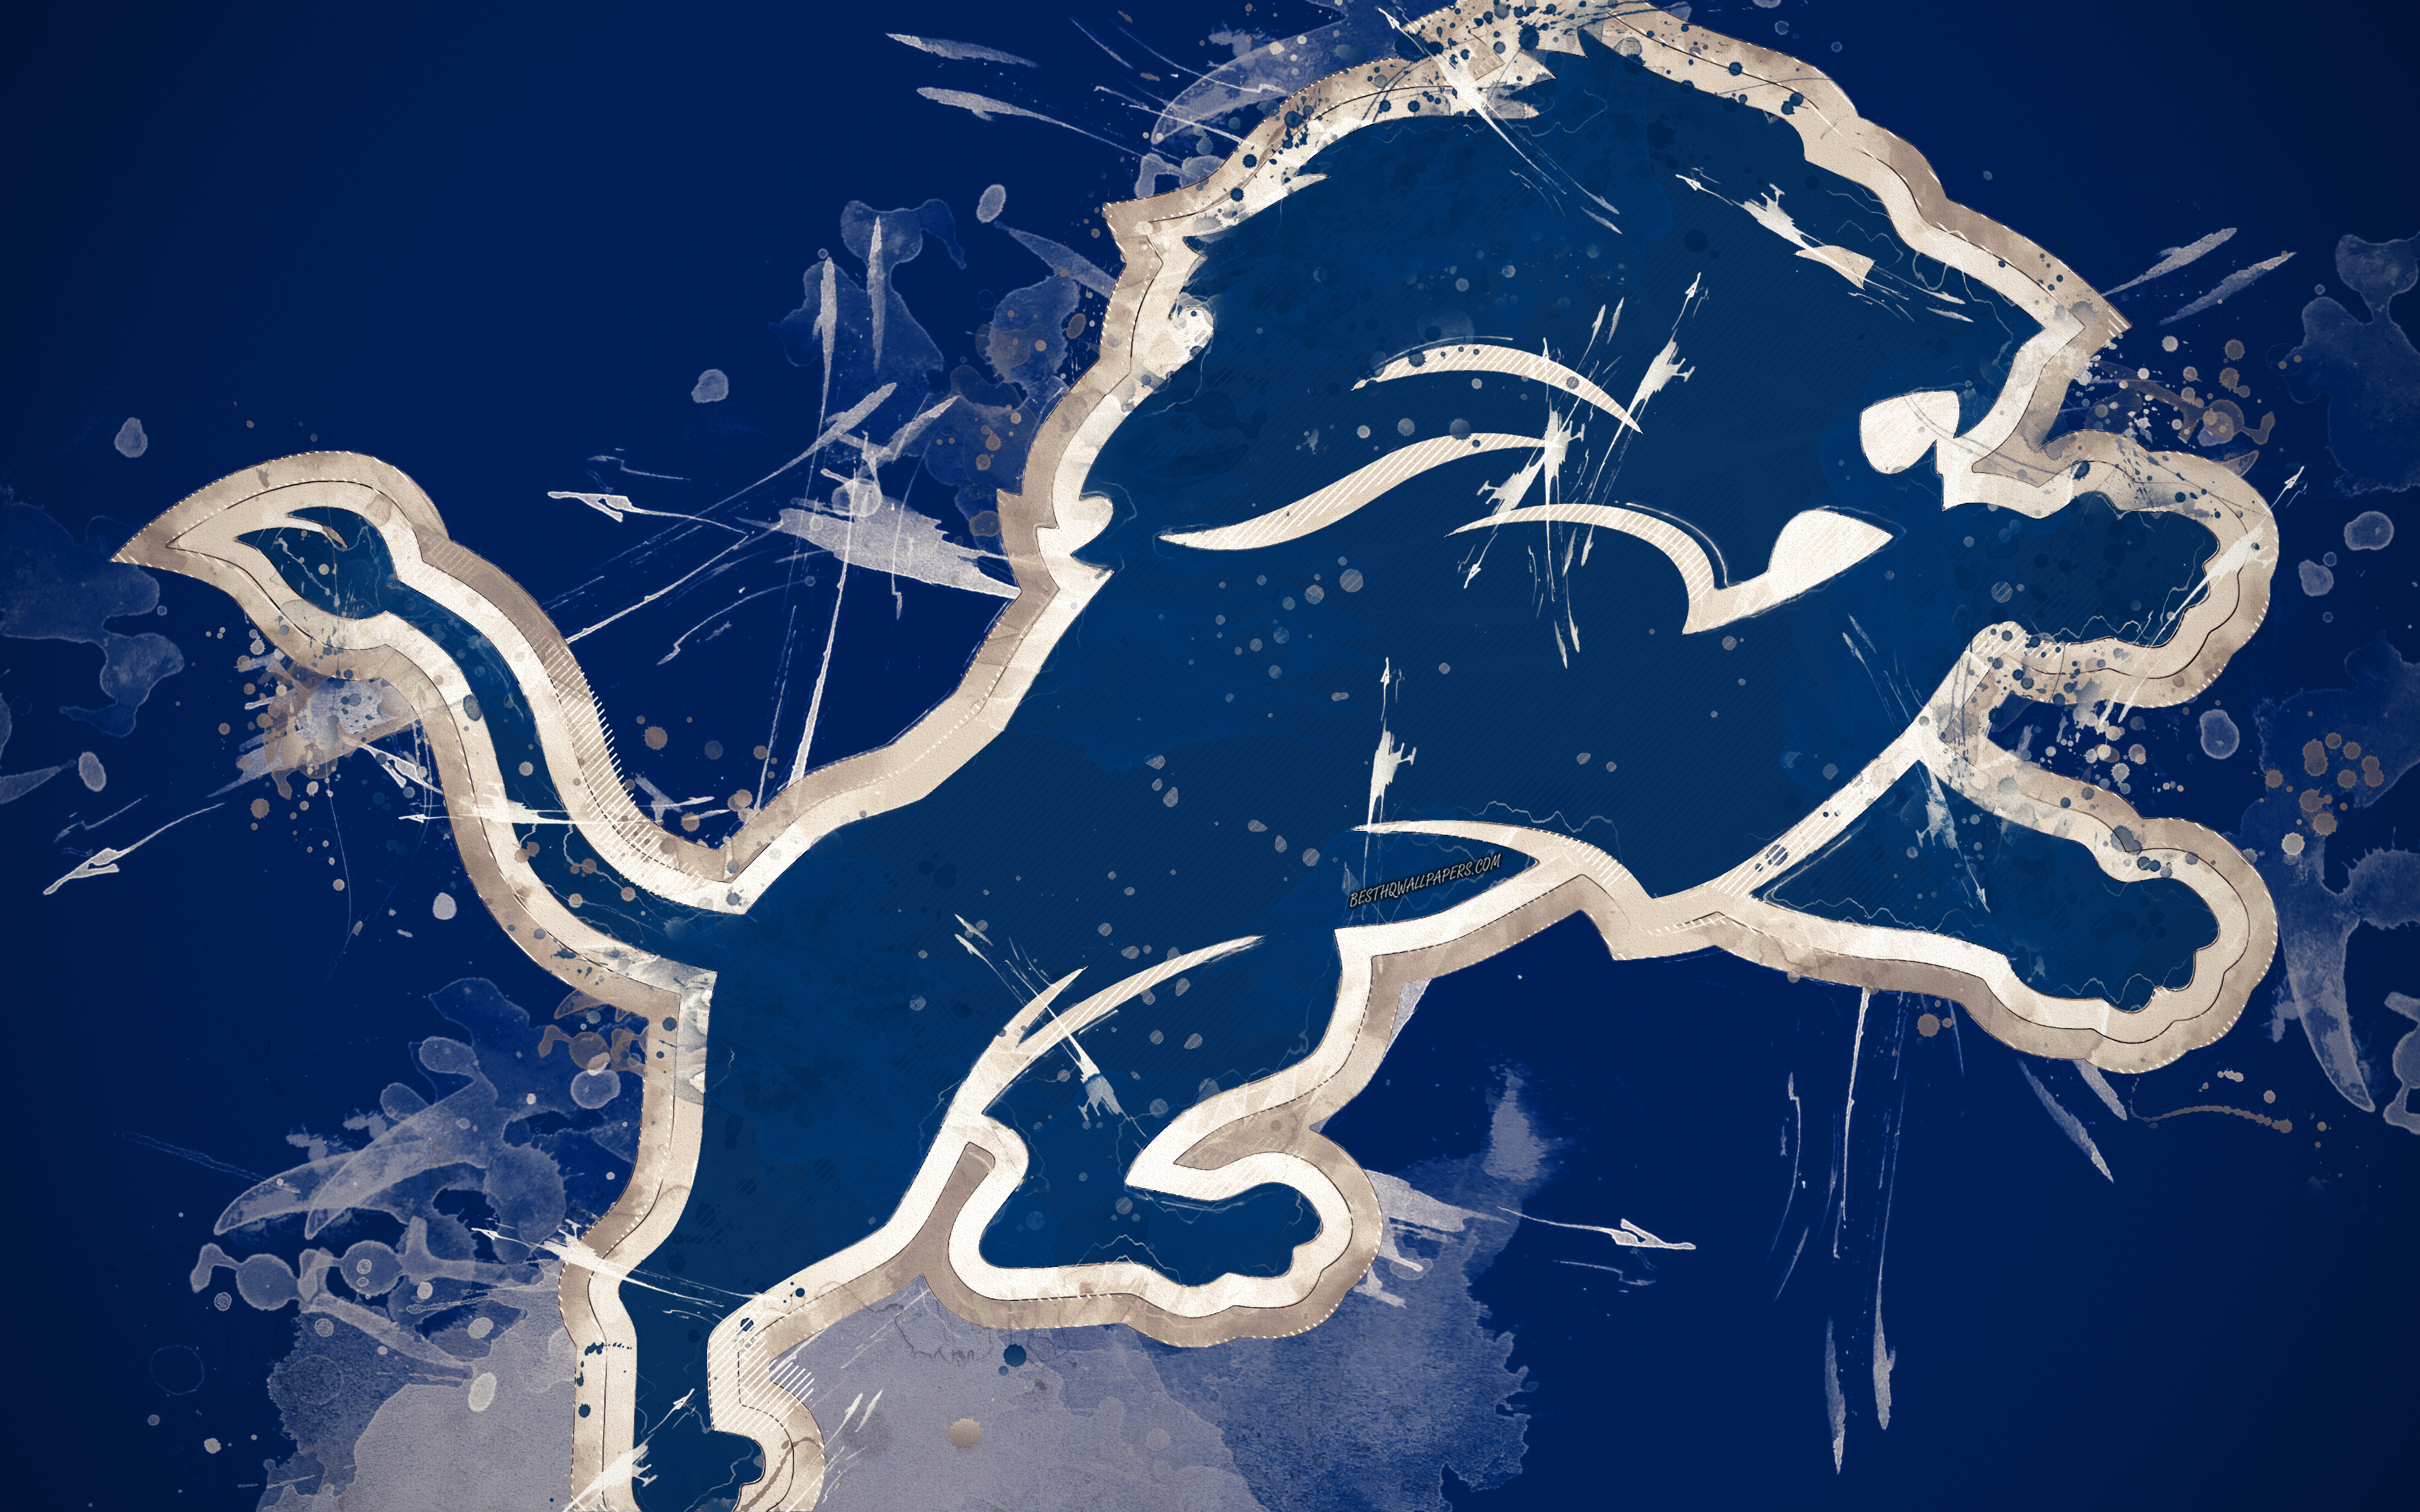 ダウンロード画像 デトロイトライオンズ 4k ロゴ グランジア アメリカのサッカーチーム エンブレム 青色の背景 塗装の美術 Nfl デトロイト ミシガン 米国 国立サッカーリーグ クリエイティブ アート 画面の解像度 3840x2400 壁紙デスクトップ上